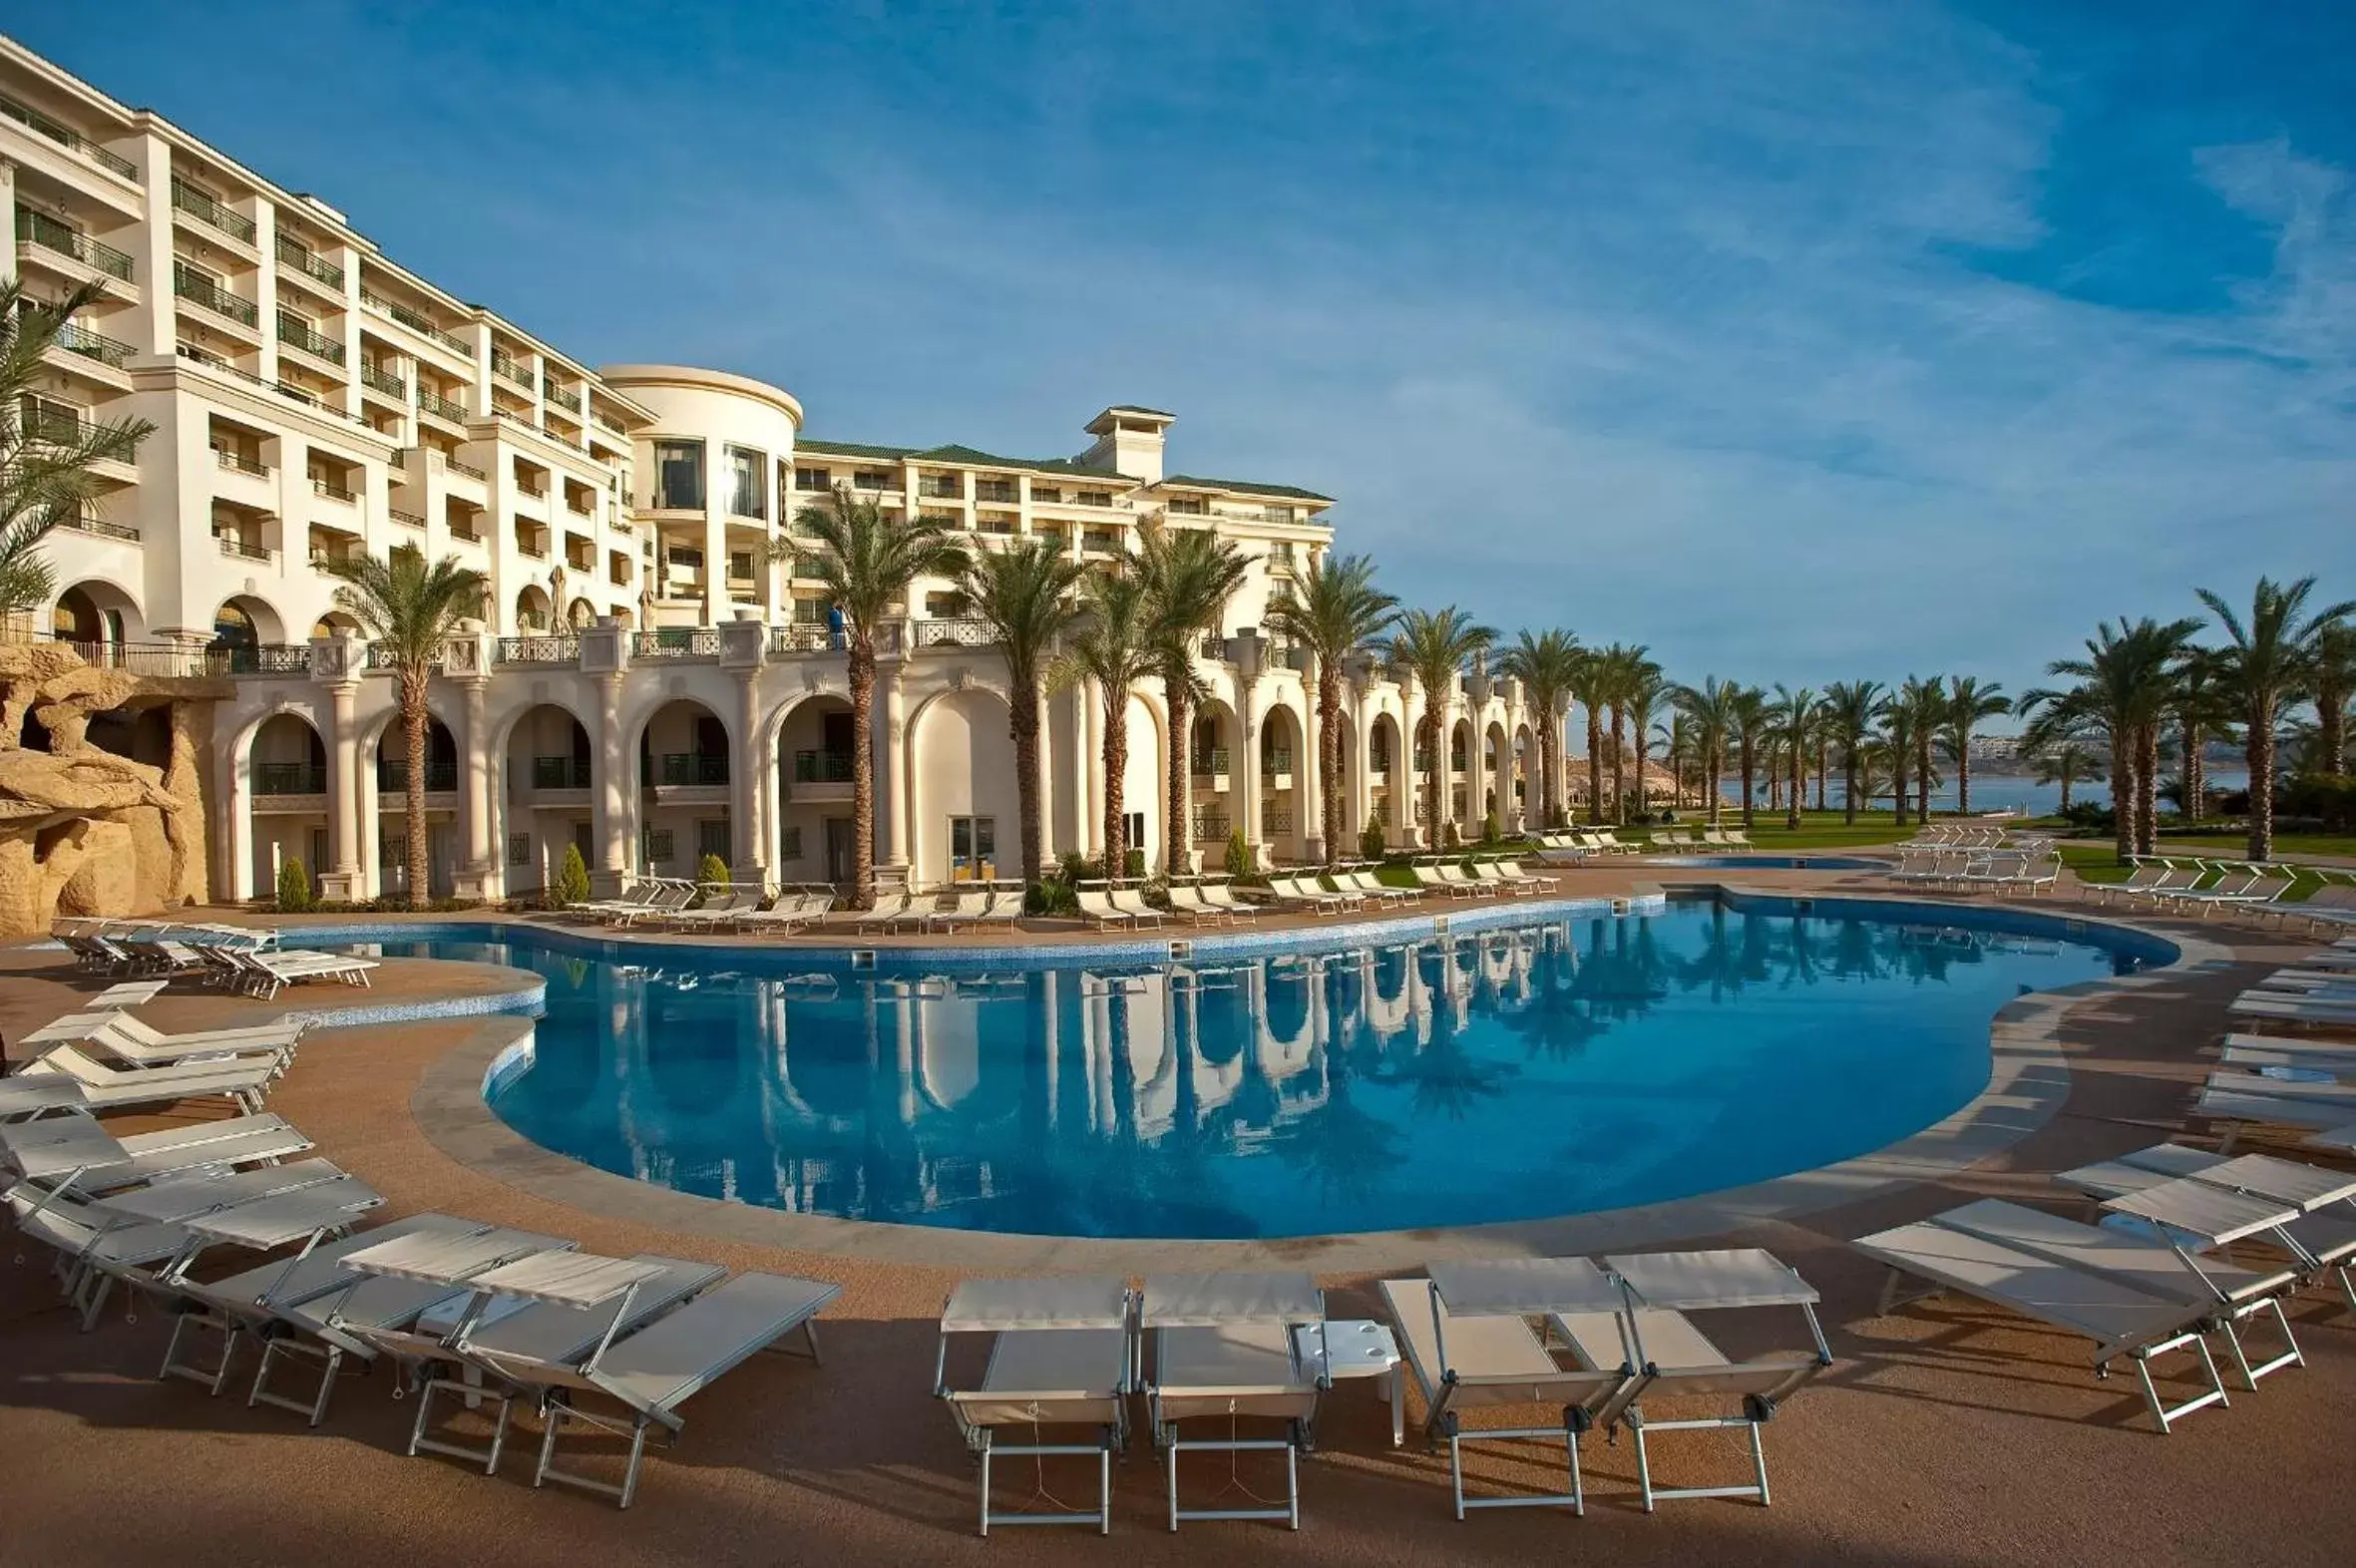 Property building, Swimming Pool in Stella Di Mare Beach Hotel & Spa